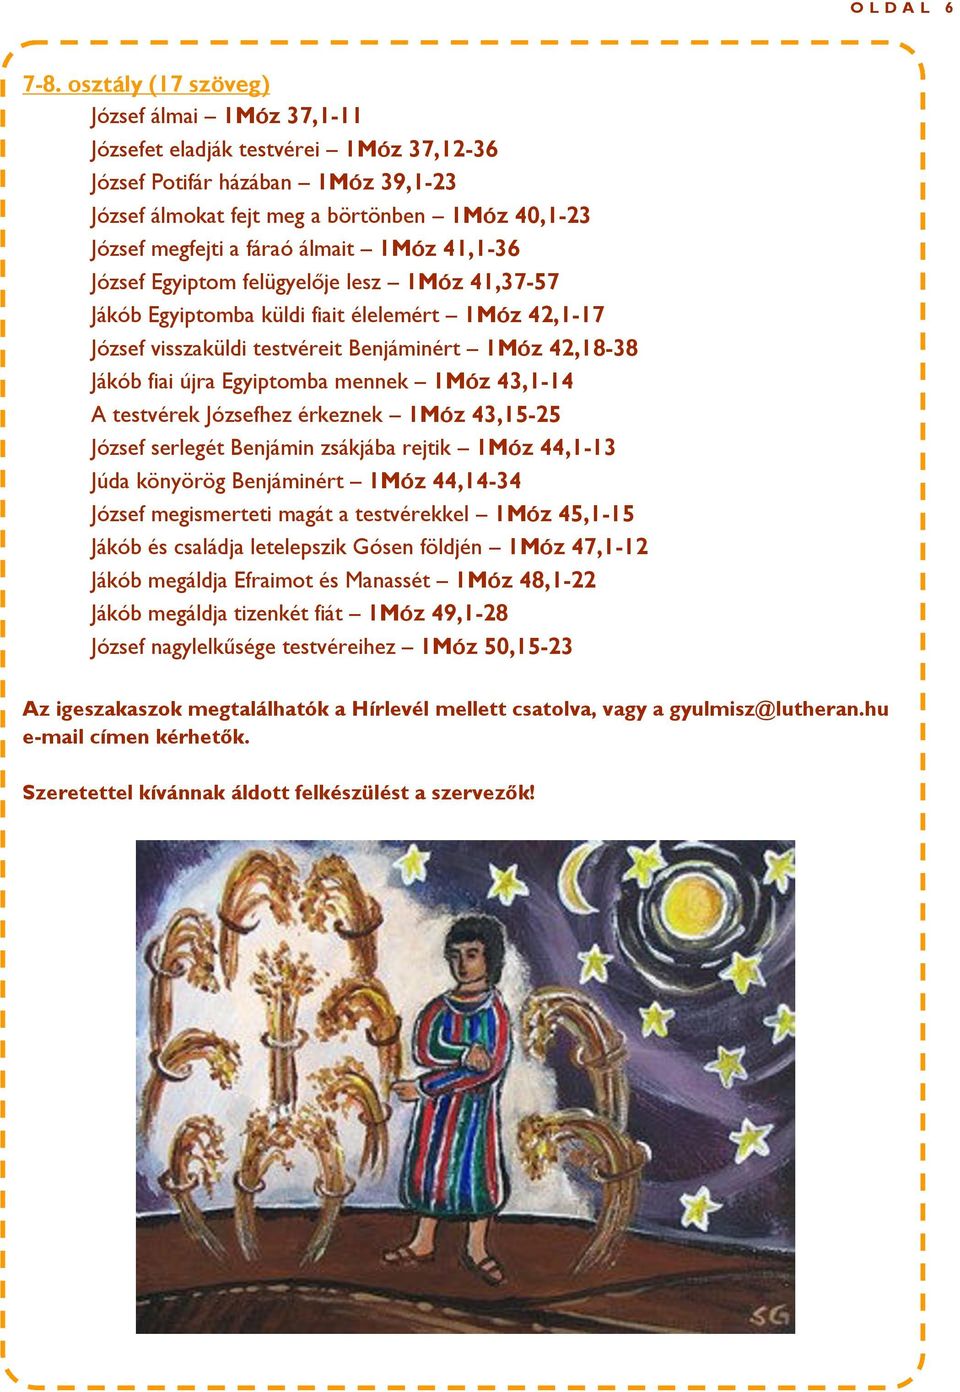 letelepszik Gósen földjén 1Móz 47,1-12 Jákób megáldja Efraimot és Manassét 1Móz 48,1-22 Jákób megáldja tizenkét fiát 1Móz 49,1-28 Az